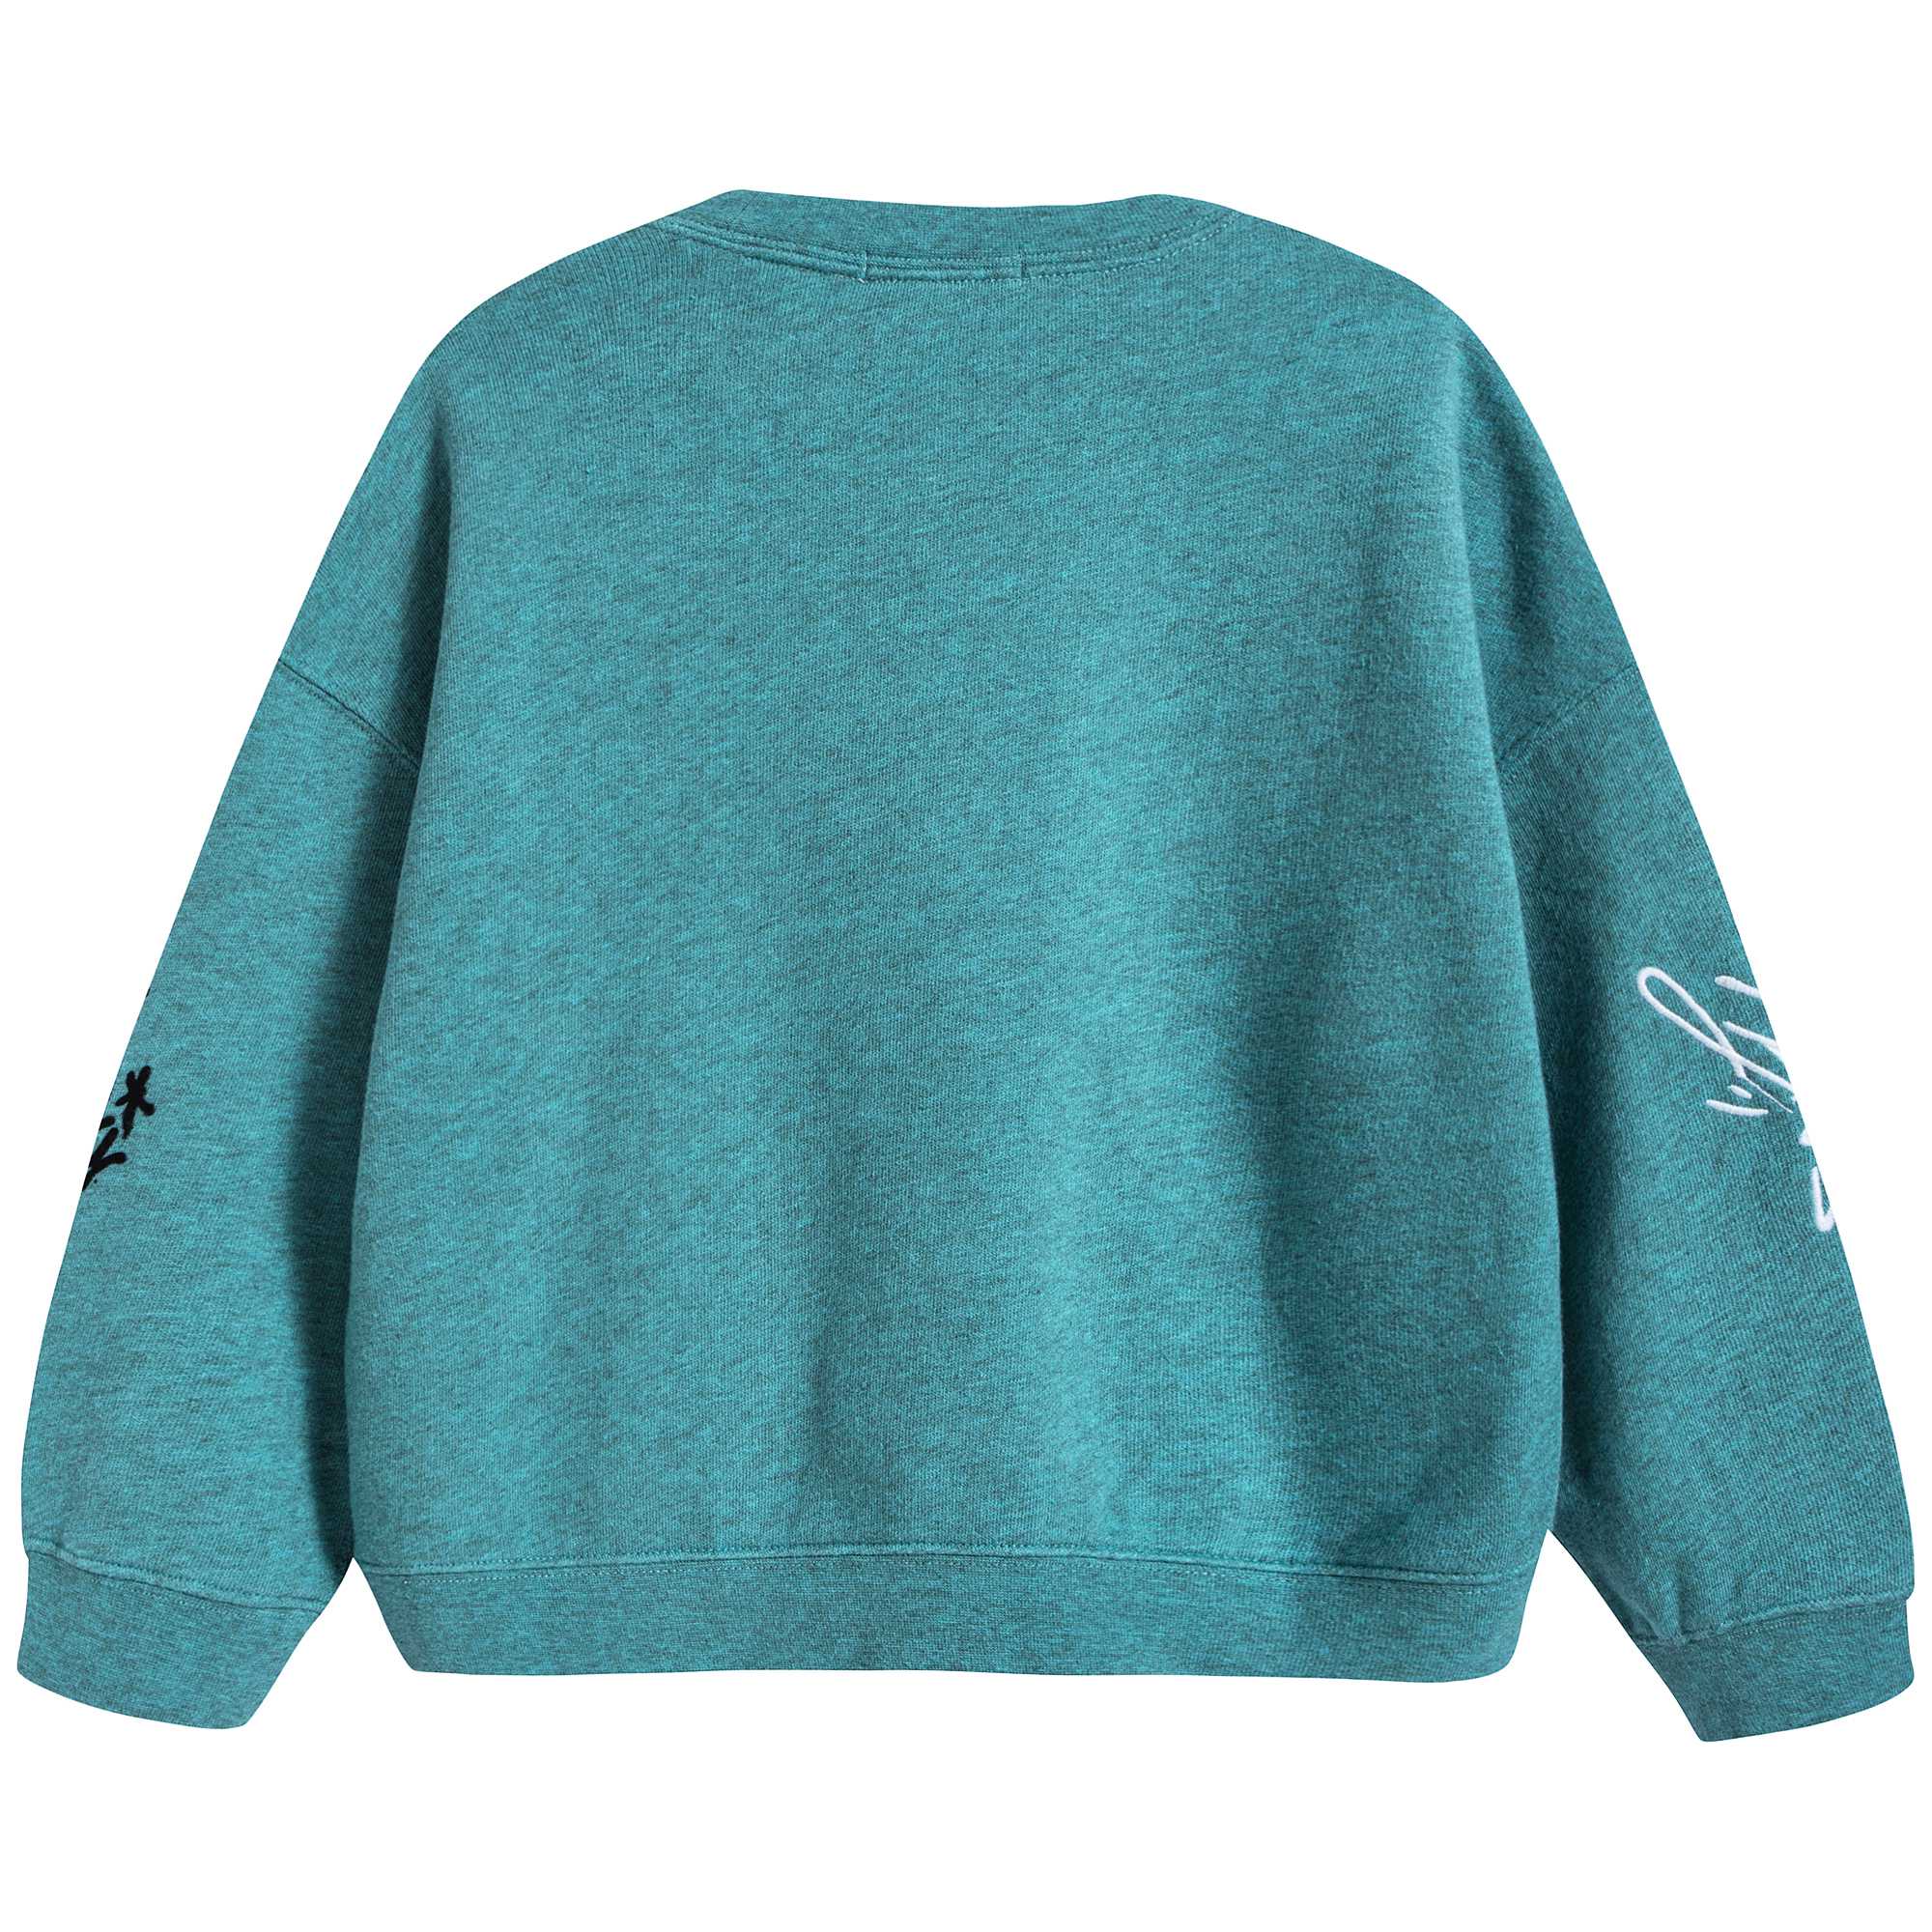 Girls Turquoise Cotton Sweatshirt